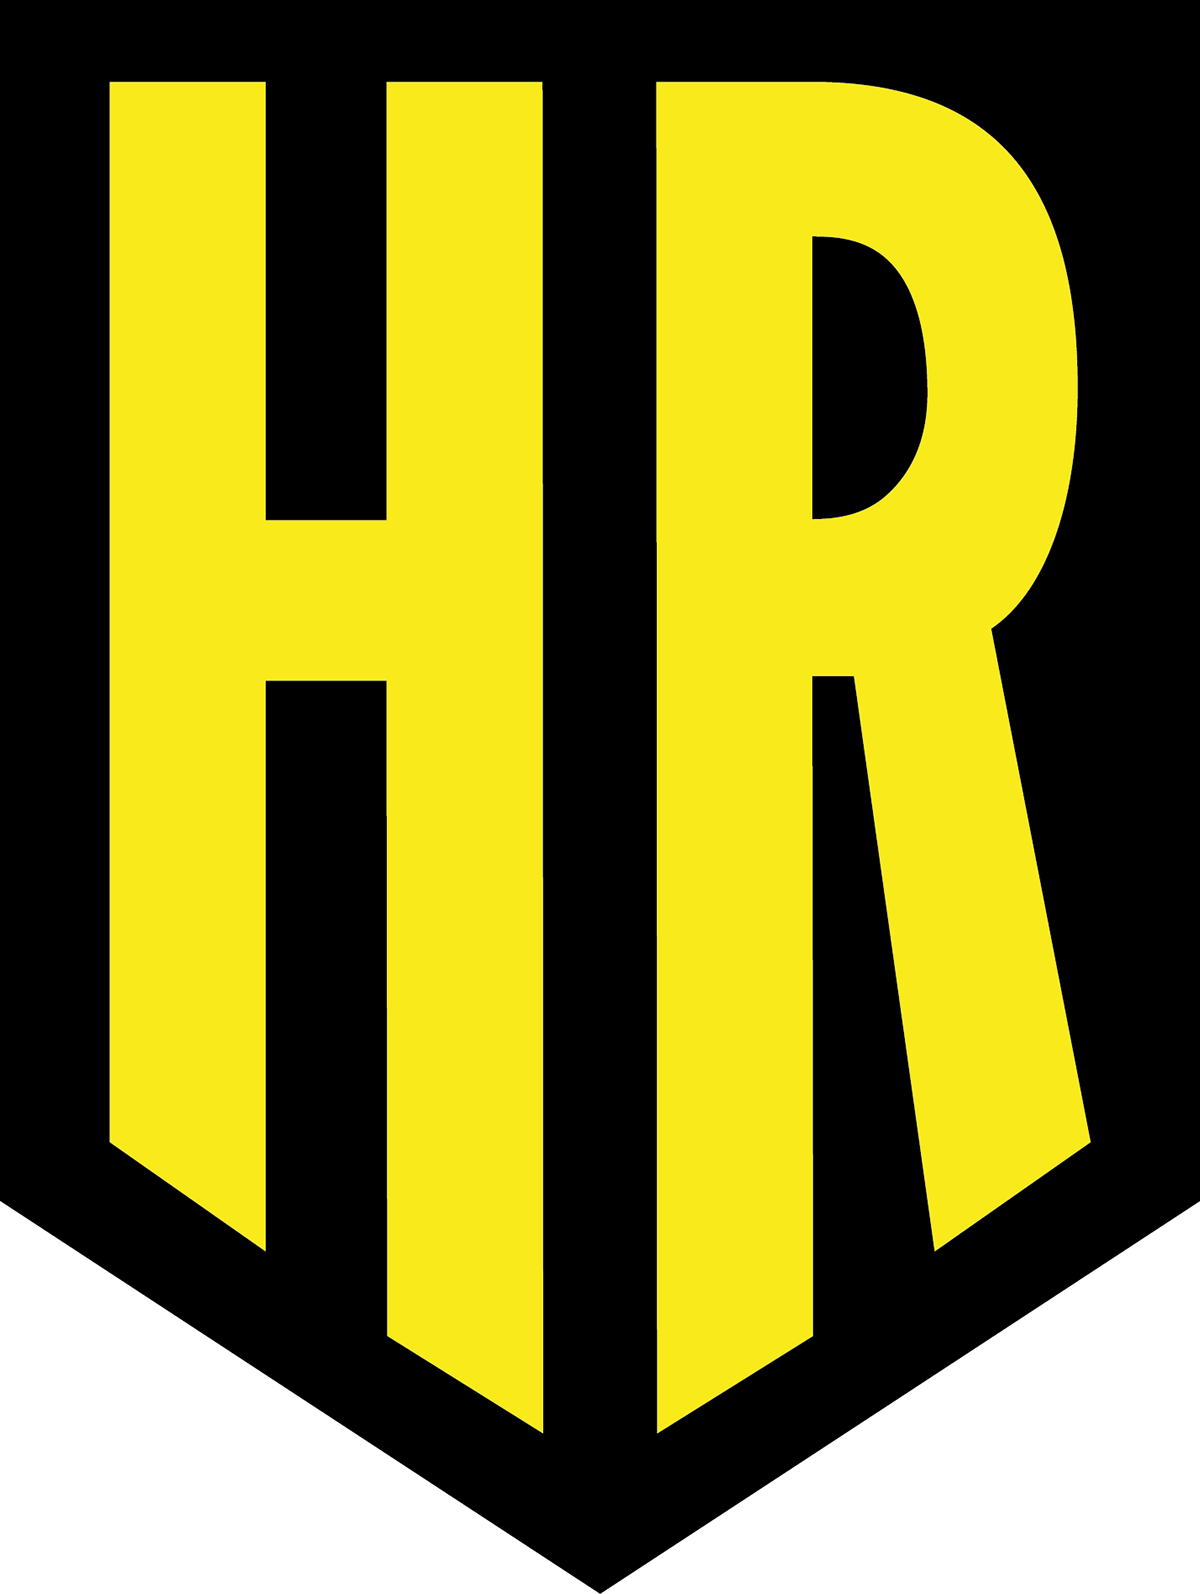 realstate Logo. Holmann realtors Proposal